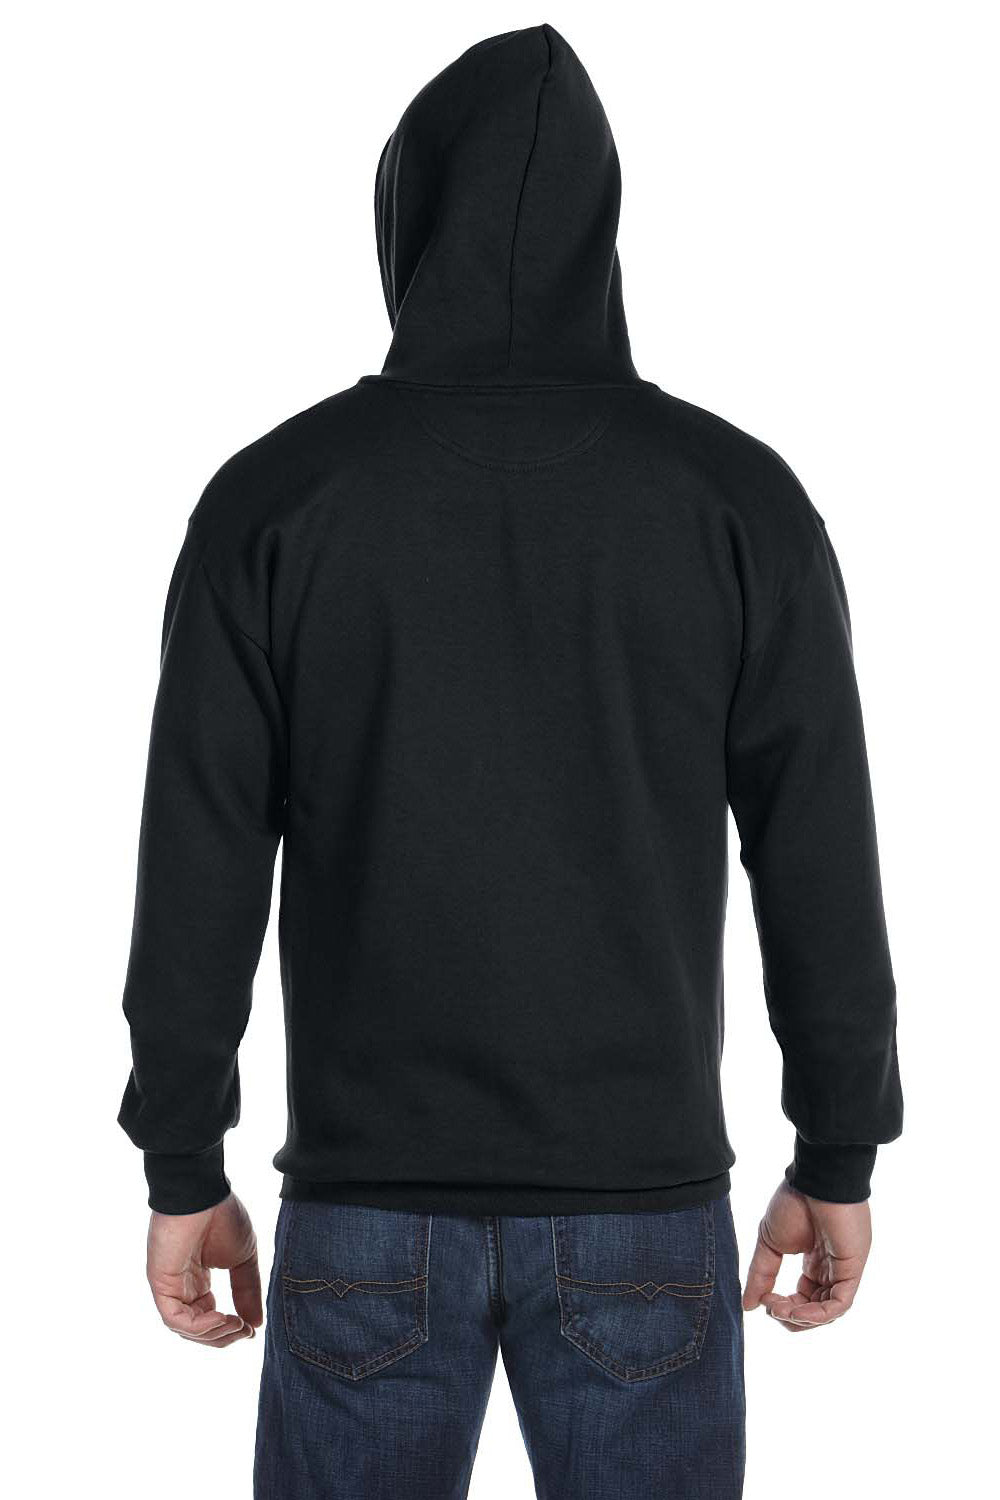 Anvil 71600 Mens Fleece Full Zip Hooded Sweatshirt Hoodie Black Back